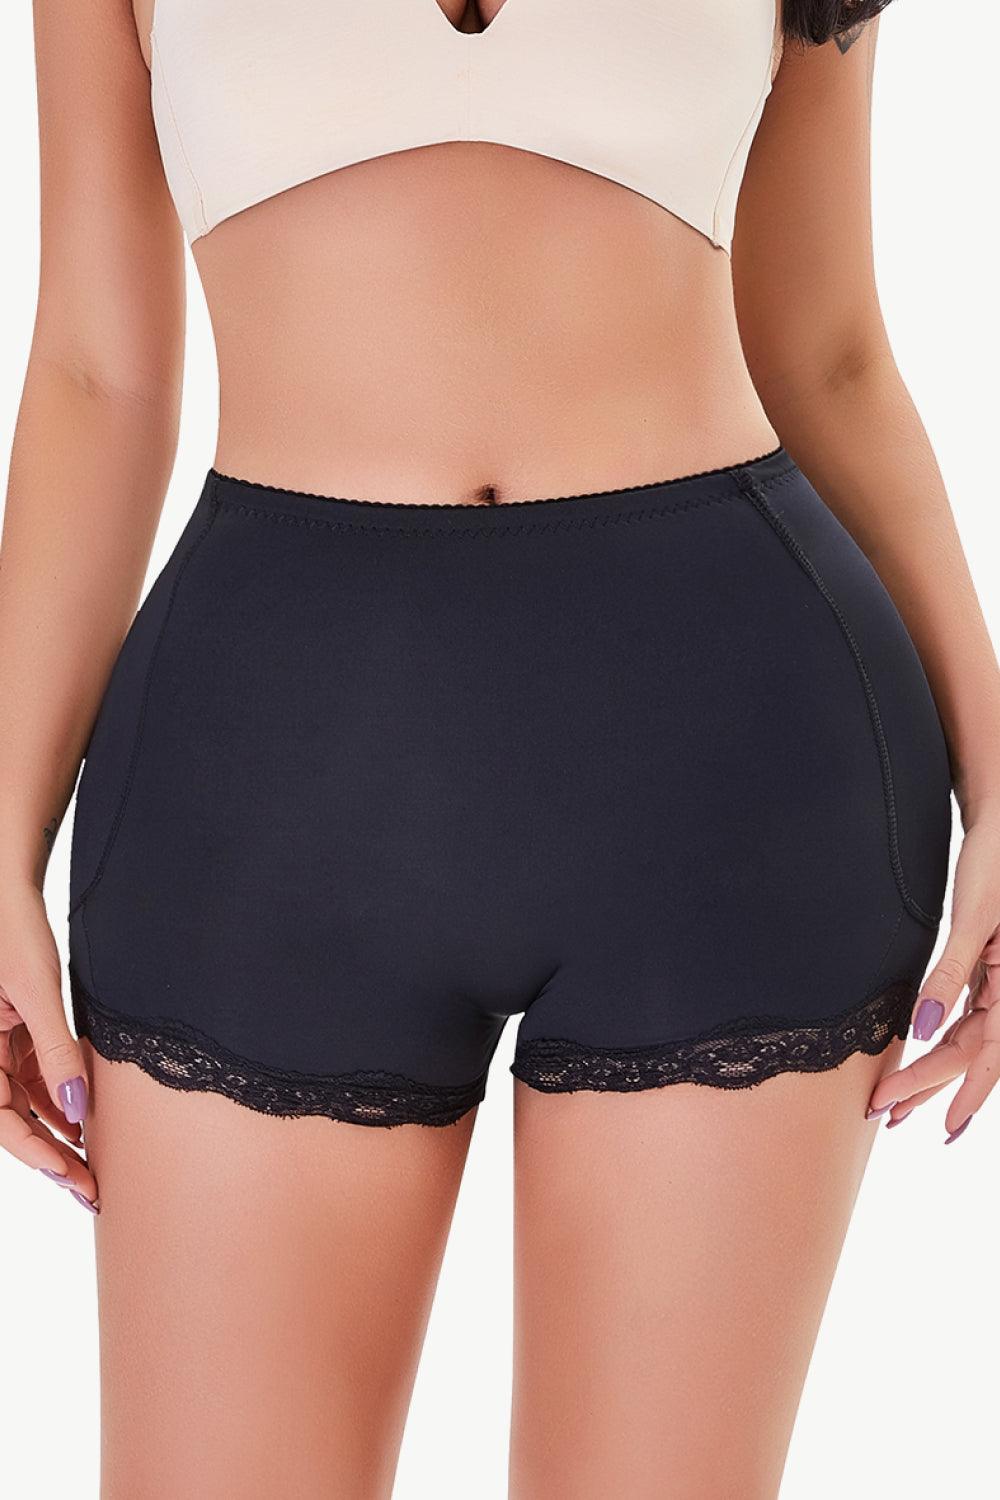 Full Size Lace Trim Shaping Shorts - Flyclothing LLC